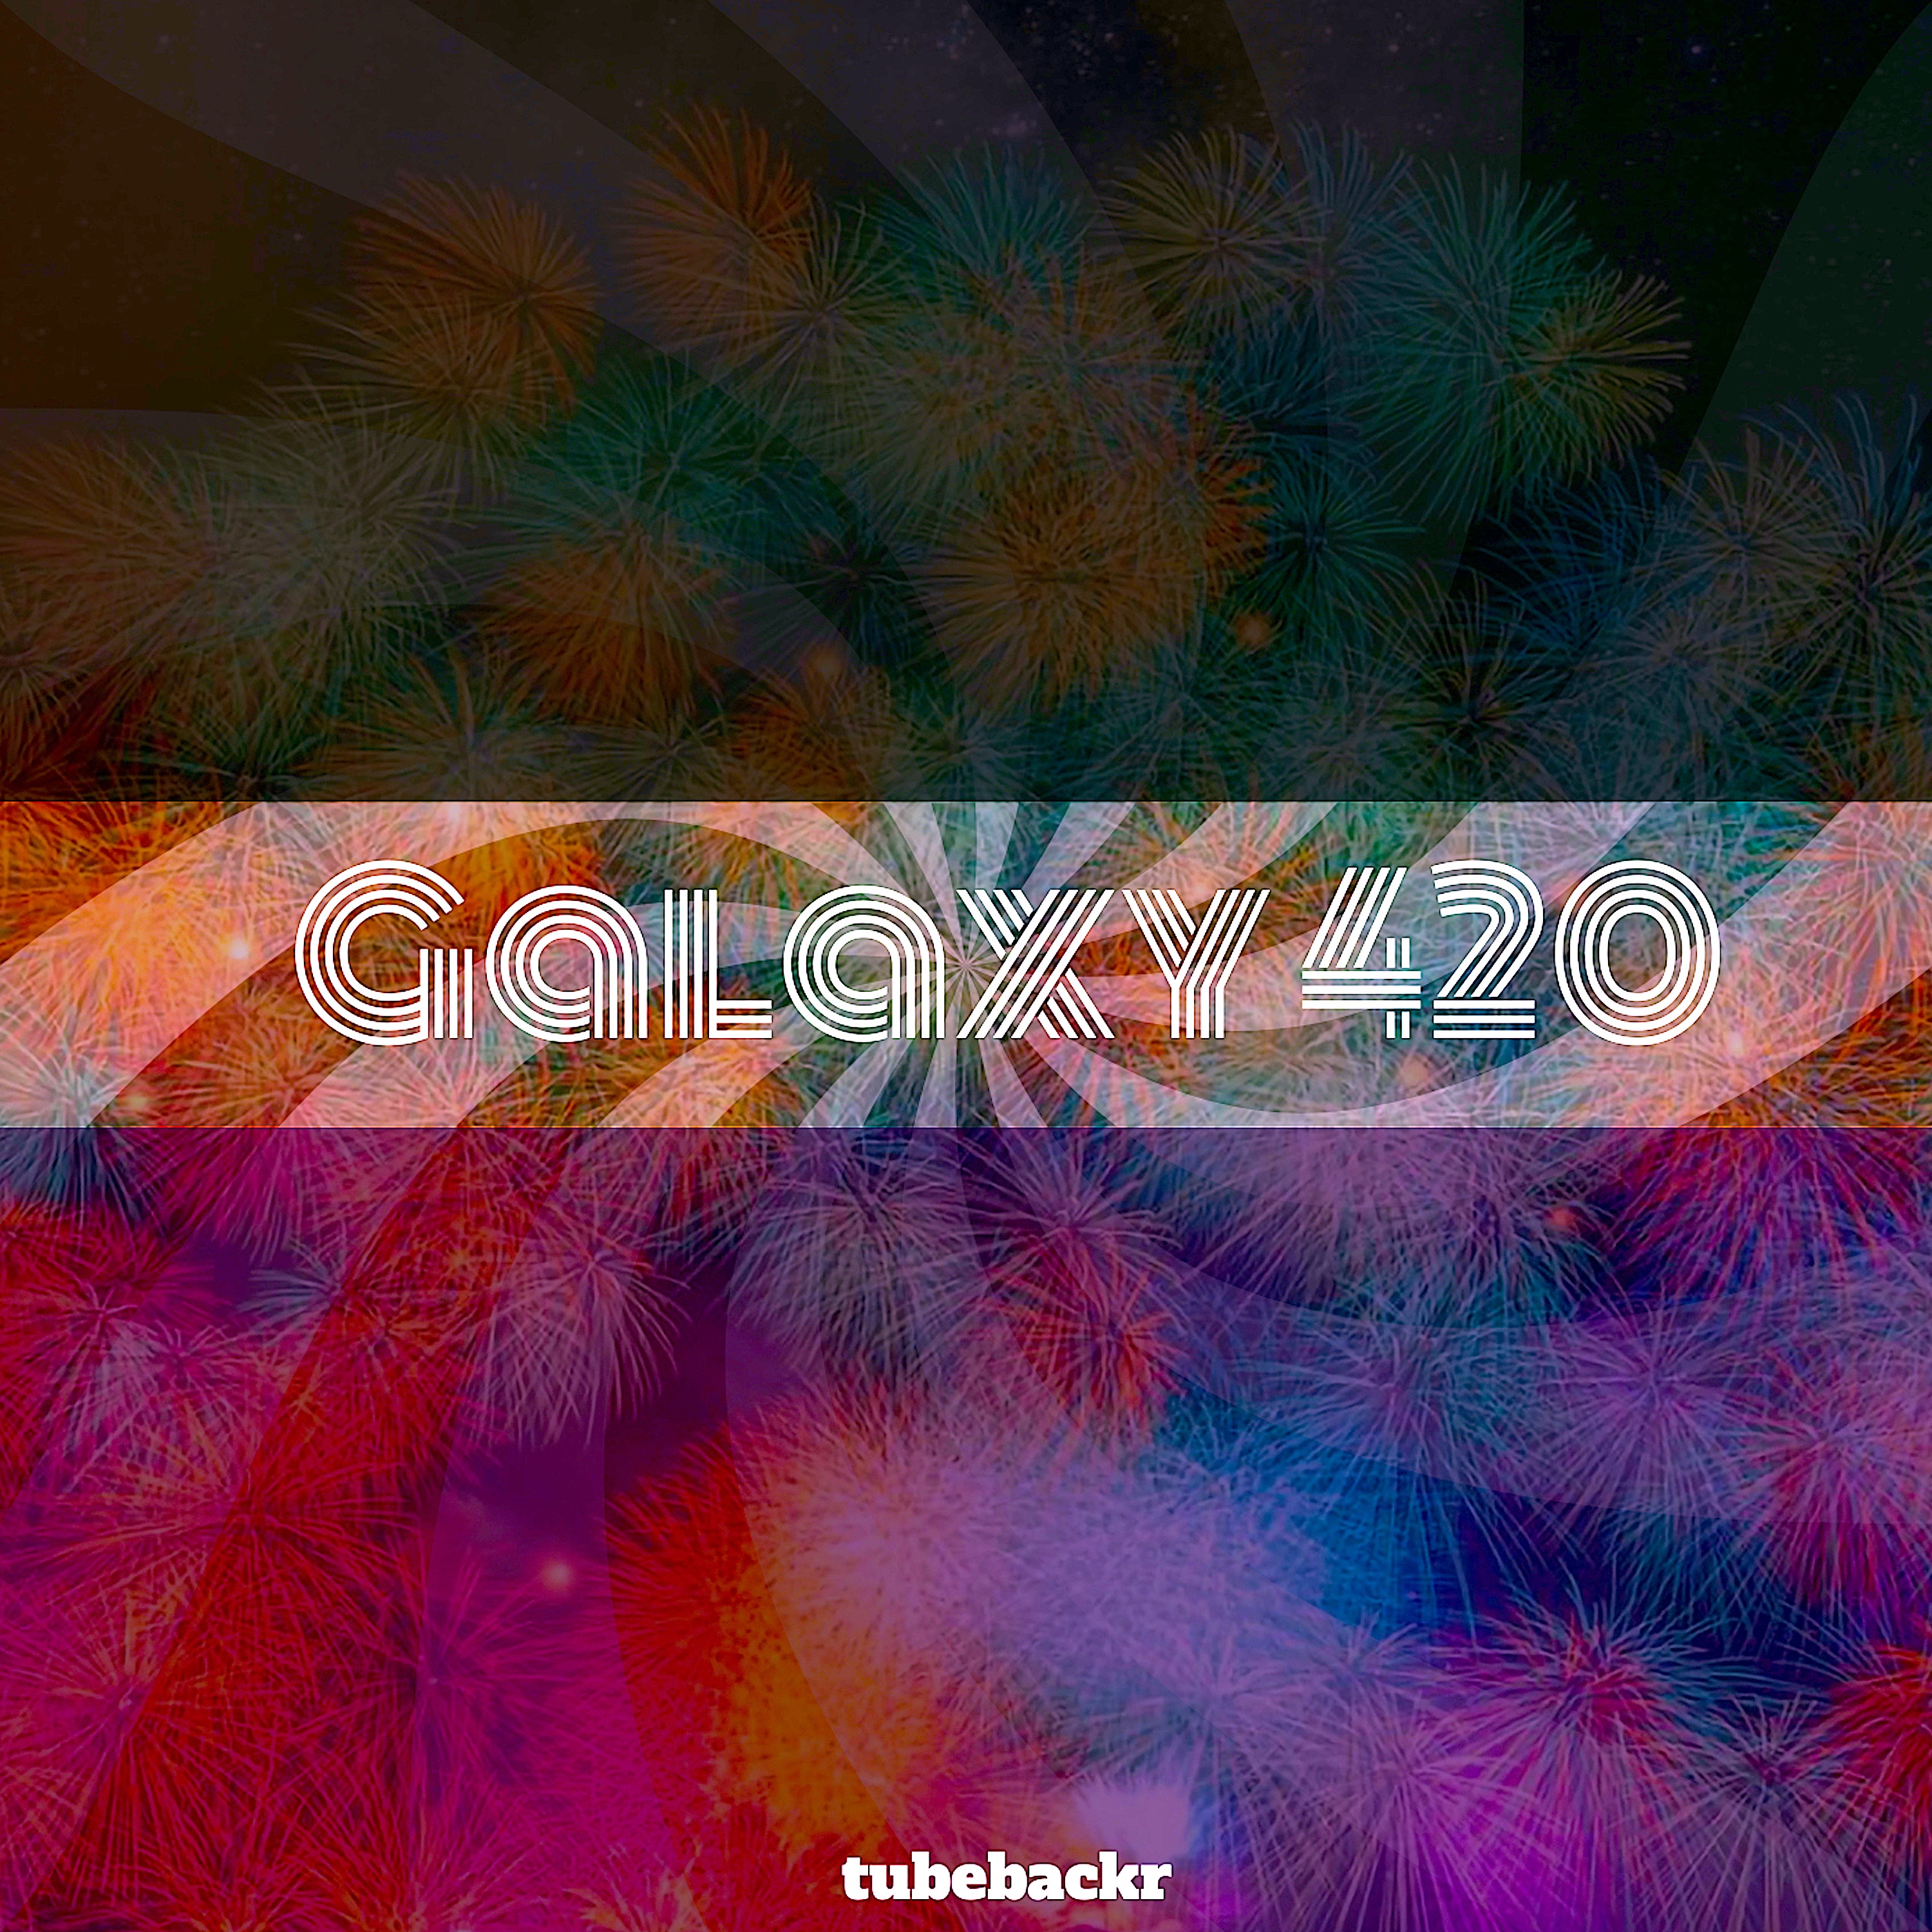 Pobierać Galaxy 420